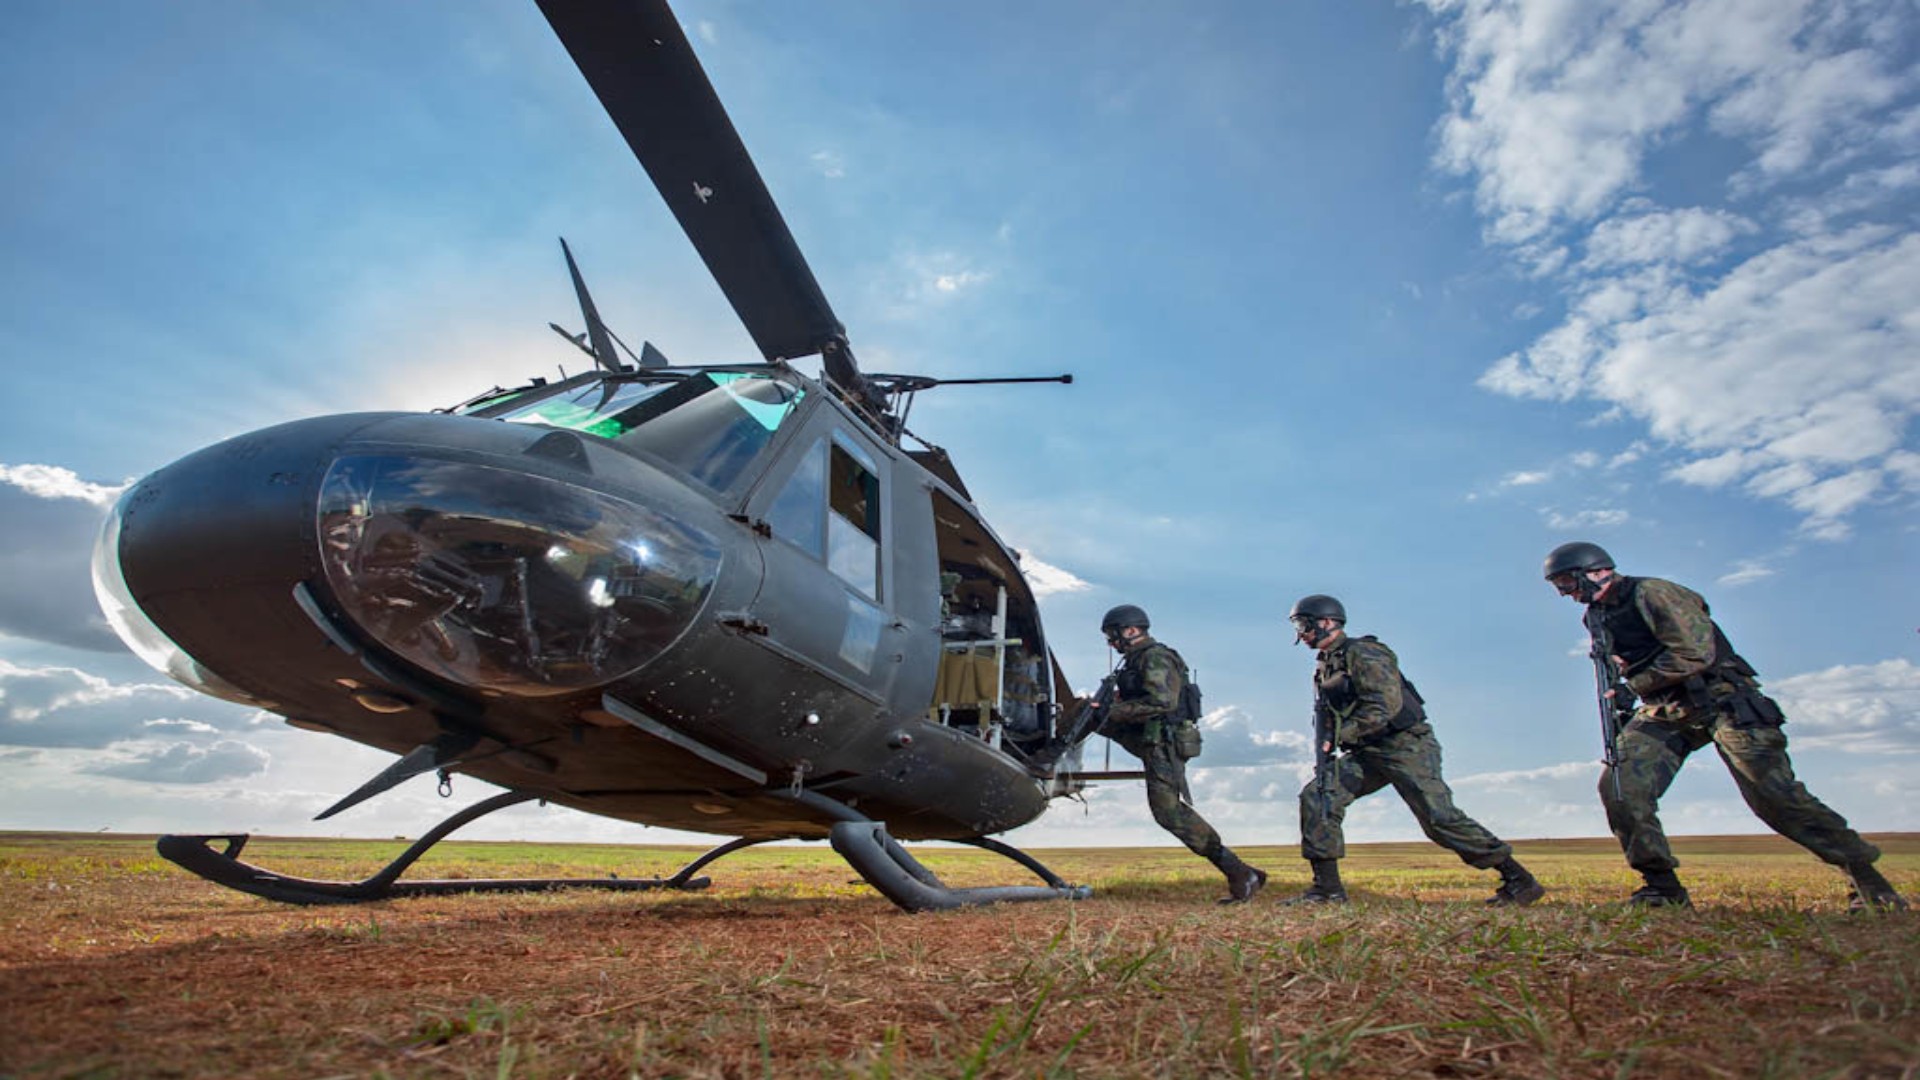 Militares de infantaria embarcam em helicóptero durante treinamento